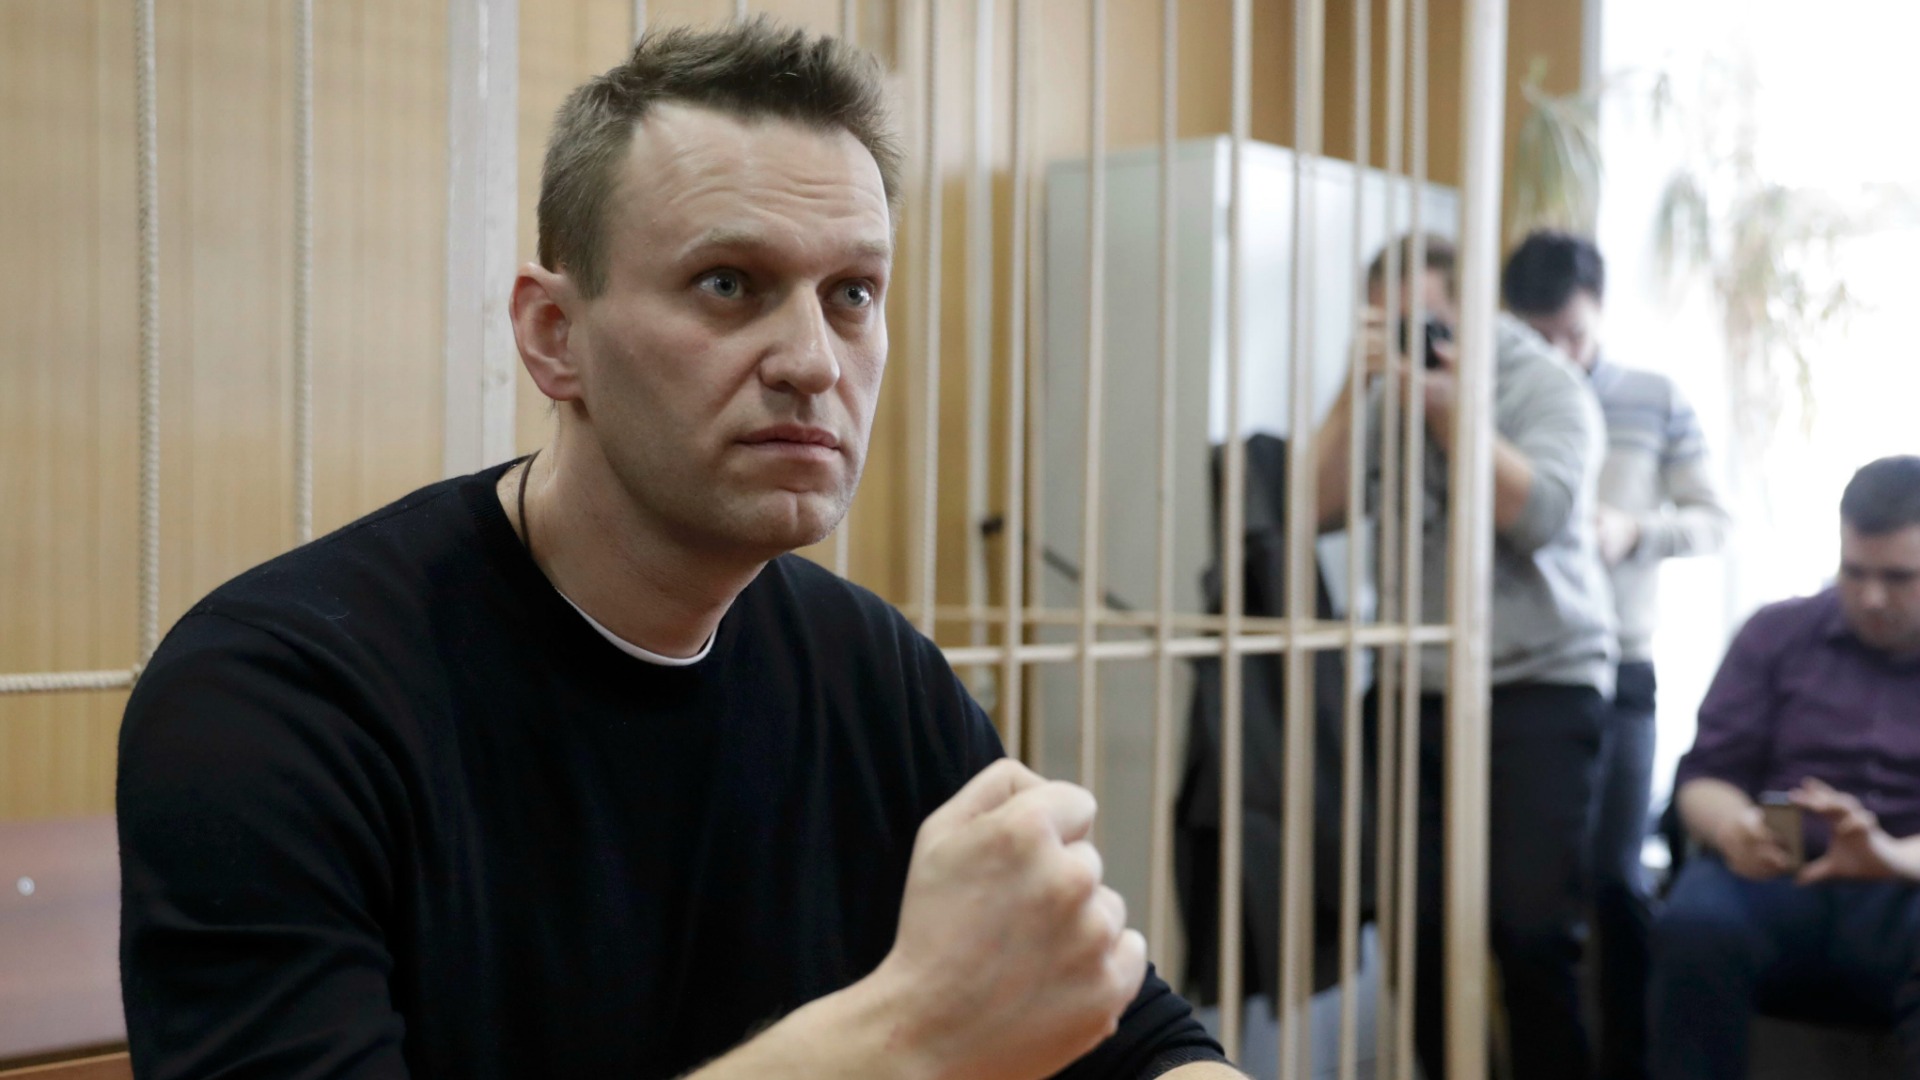 El opositor ruso Navalny, condenado a 15 días de cárcel por un tribunal